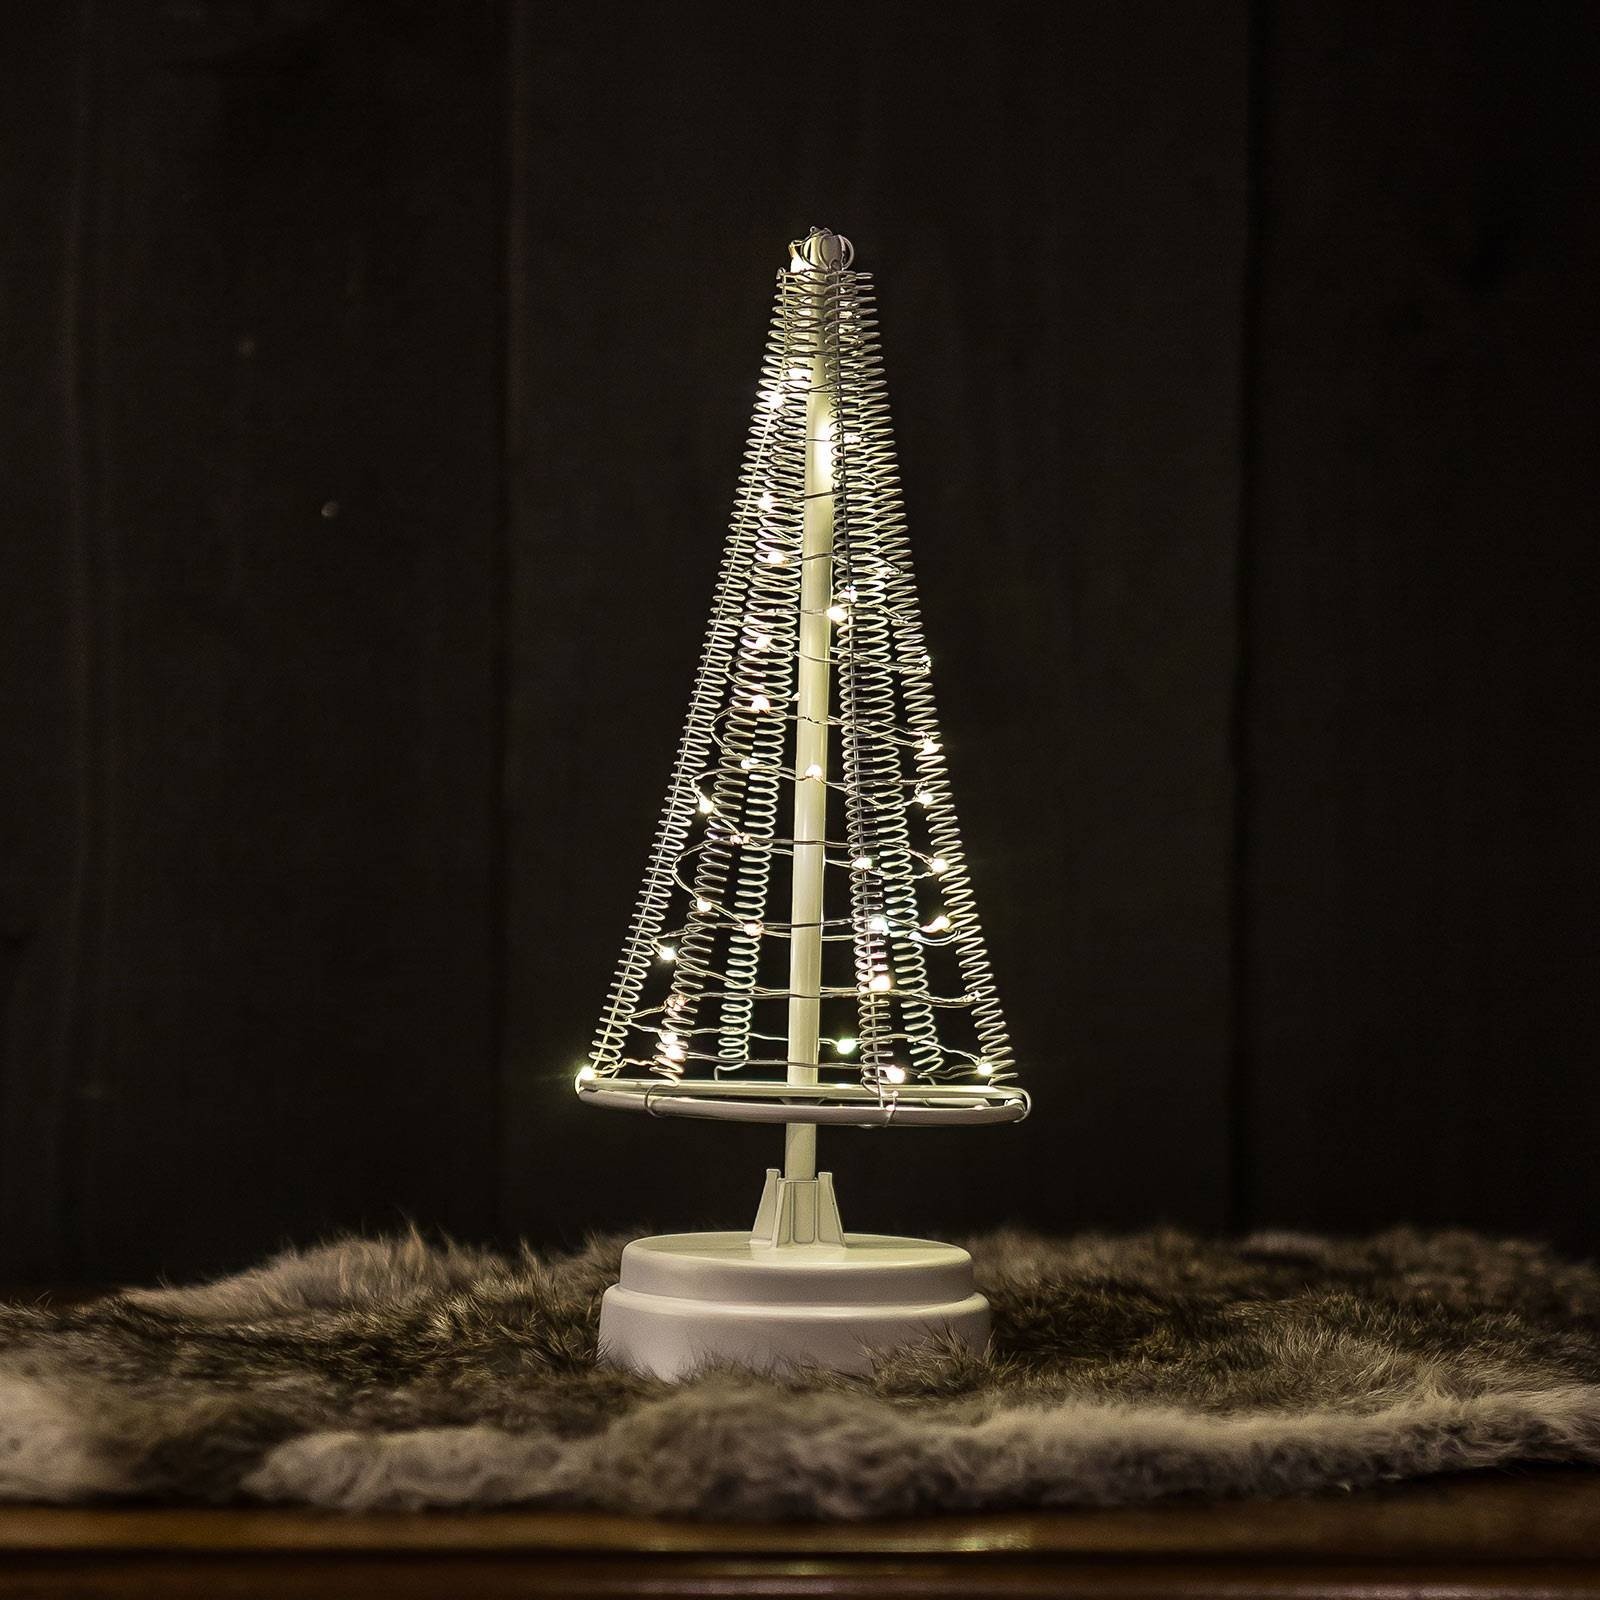 Bild von LED Weihnachtsbaum 40 LED innen 25cm Metall silber Höhe 26 cm